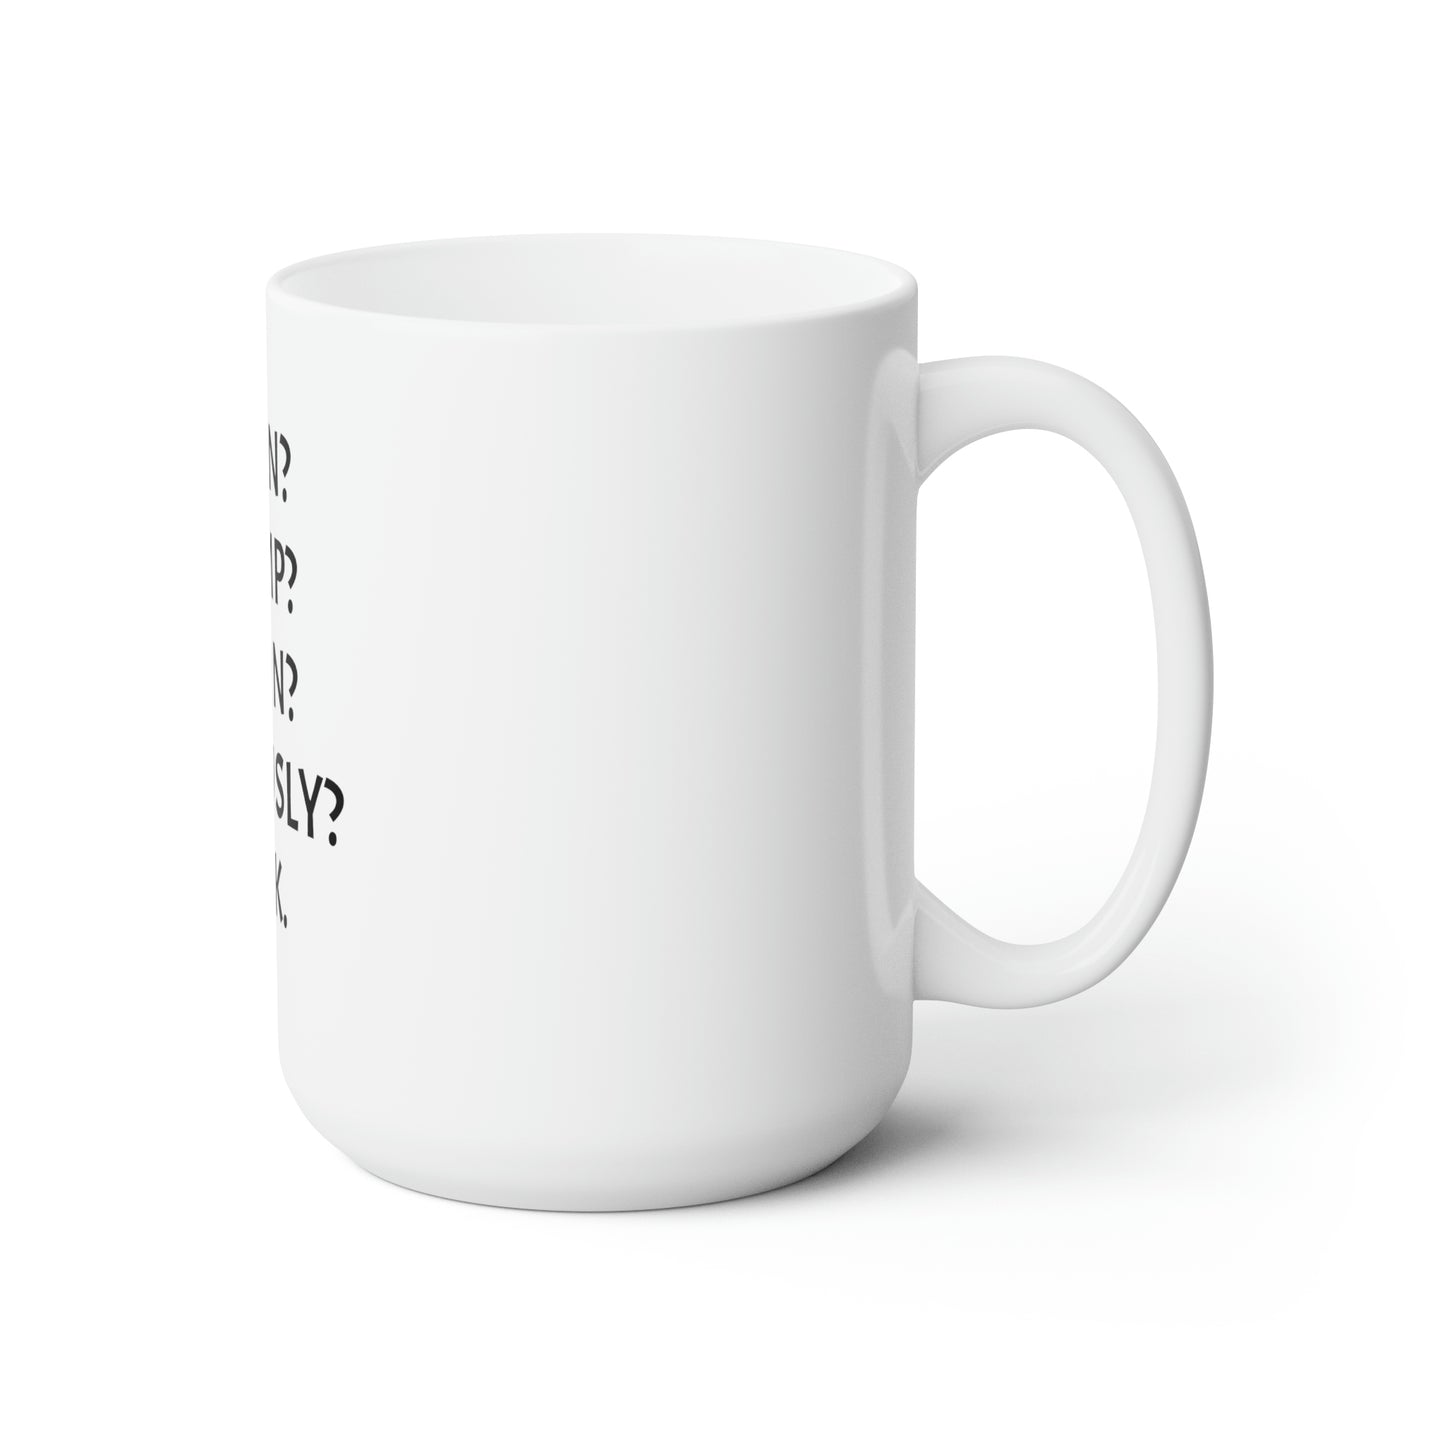 Better Options Ceramic Mug 15oz